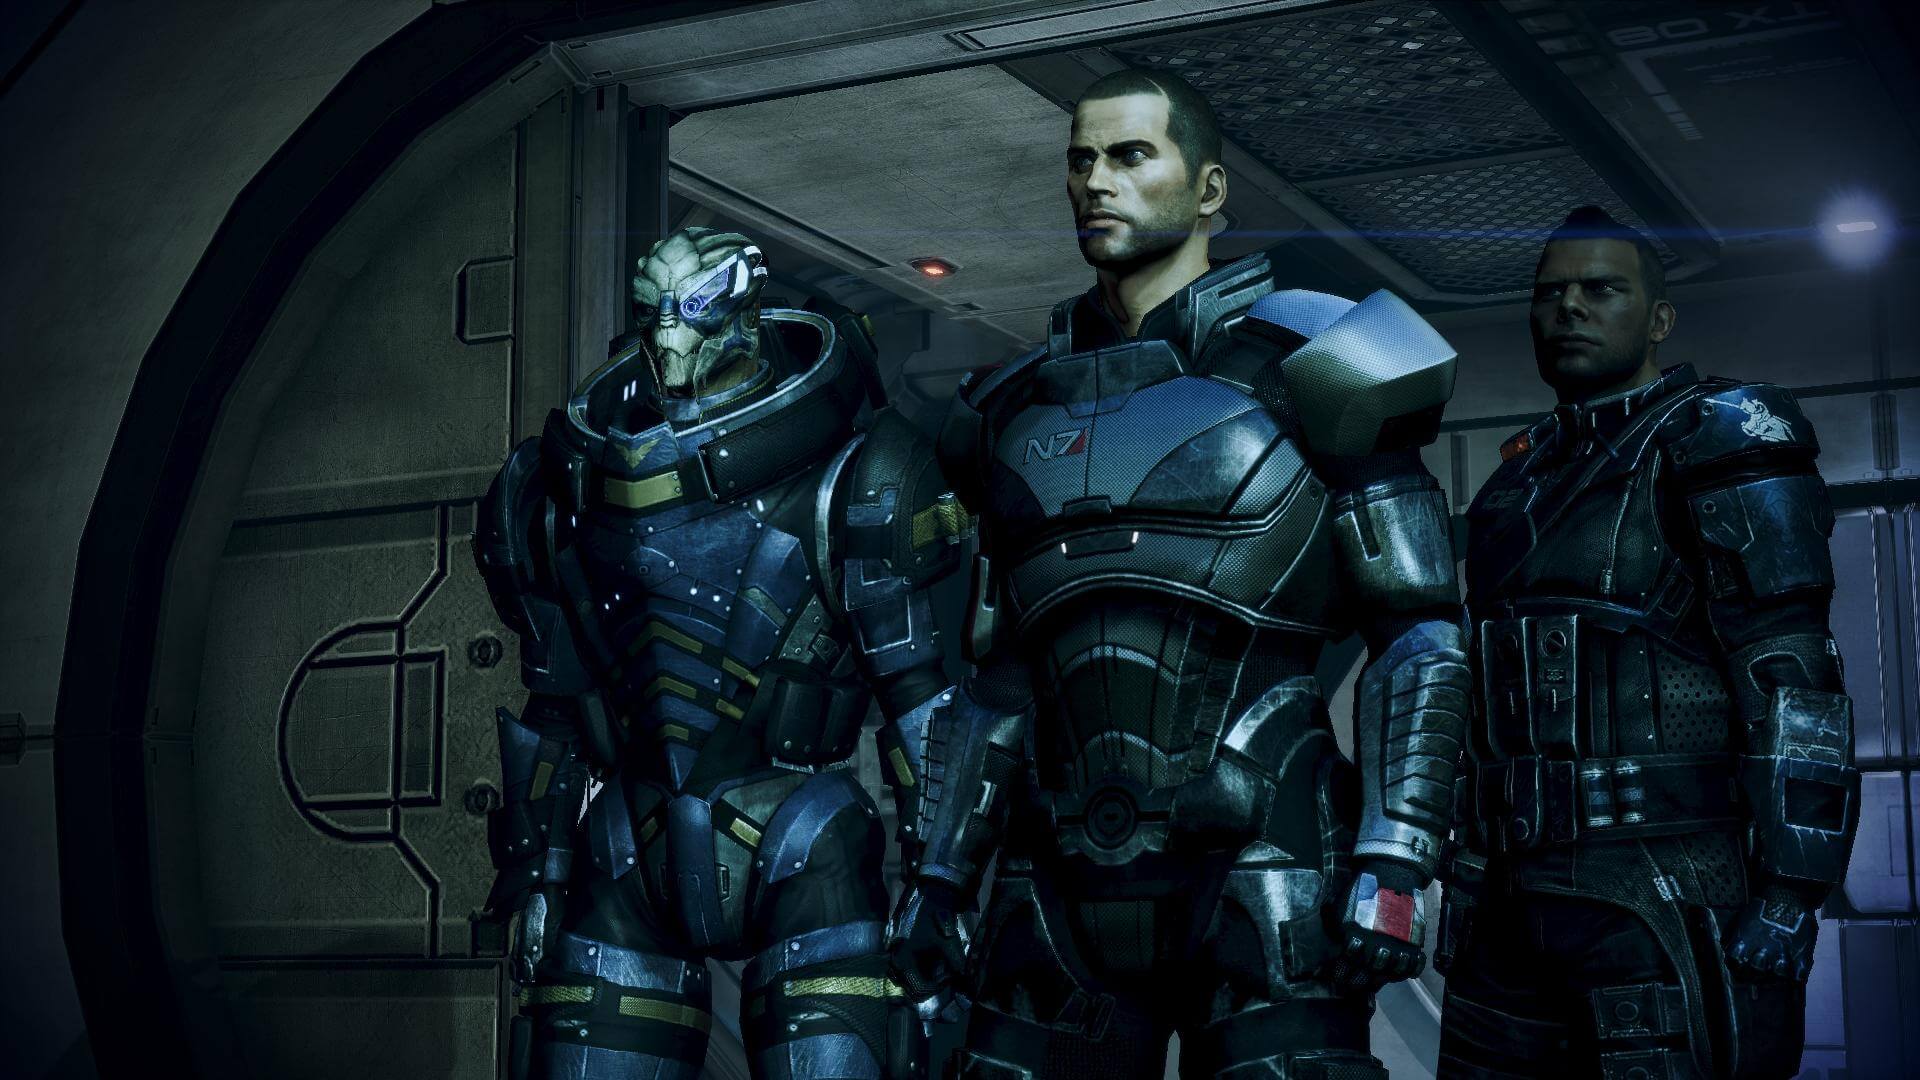 В моде ALOT для Mass Effect 3 было добавлено и улучшено больше 200 высокока...